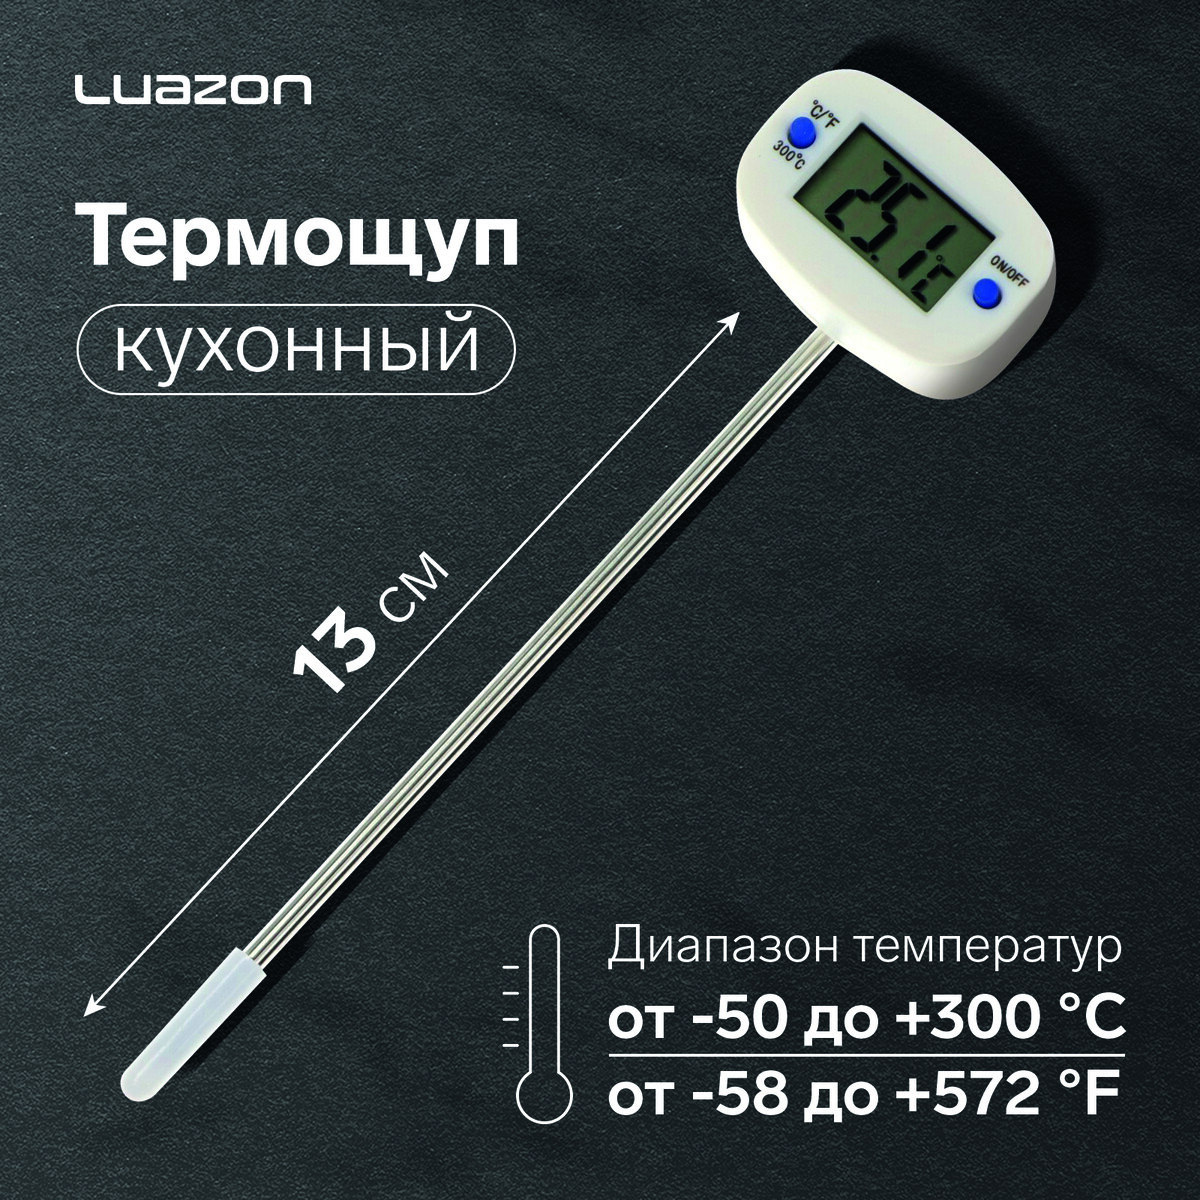 Термощуп кухонный luazon ta-288, максимальная температура 300 °c, от lr44, белый термощуп кухонный luazon ltr 01 максимальная температура 300 °c от lr44 белый